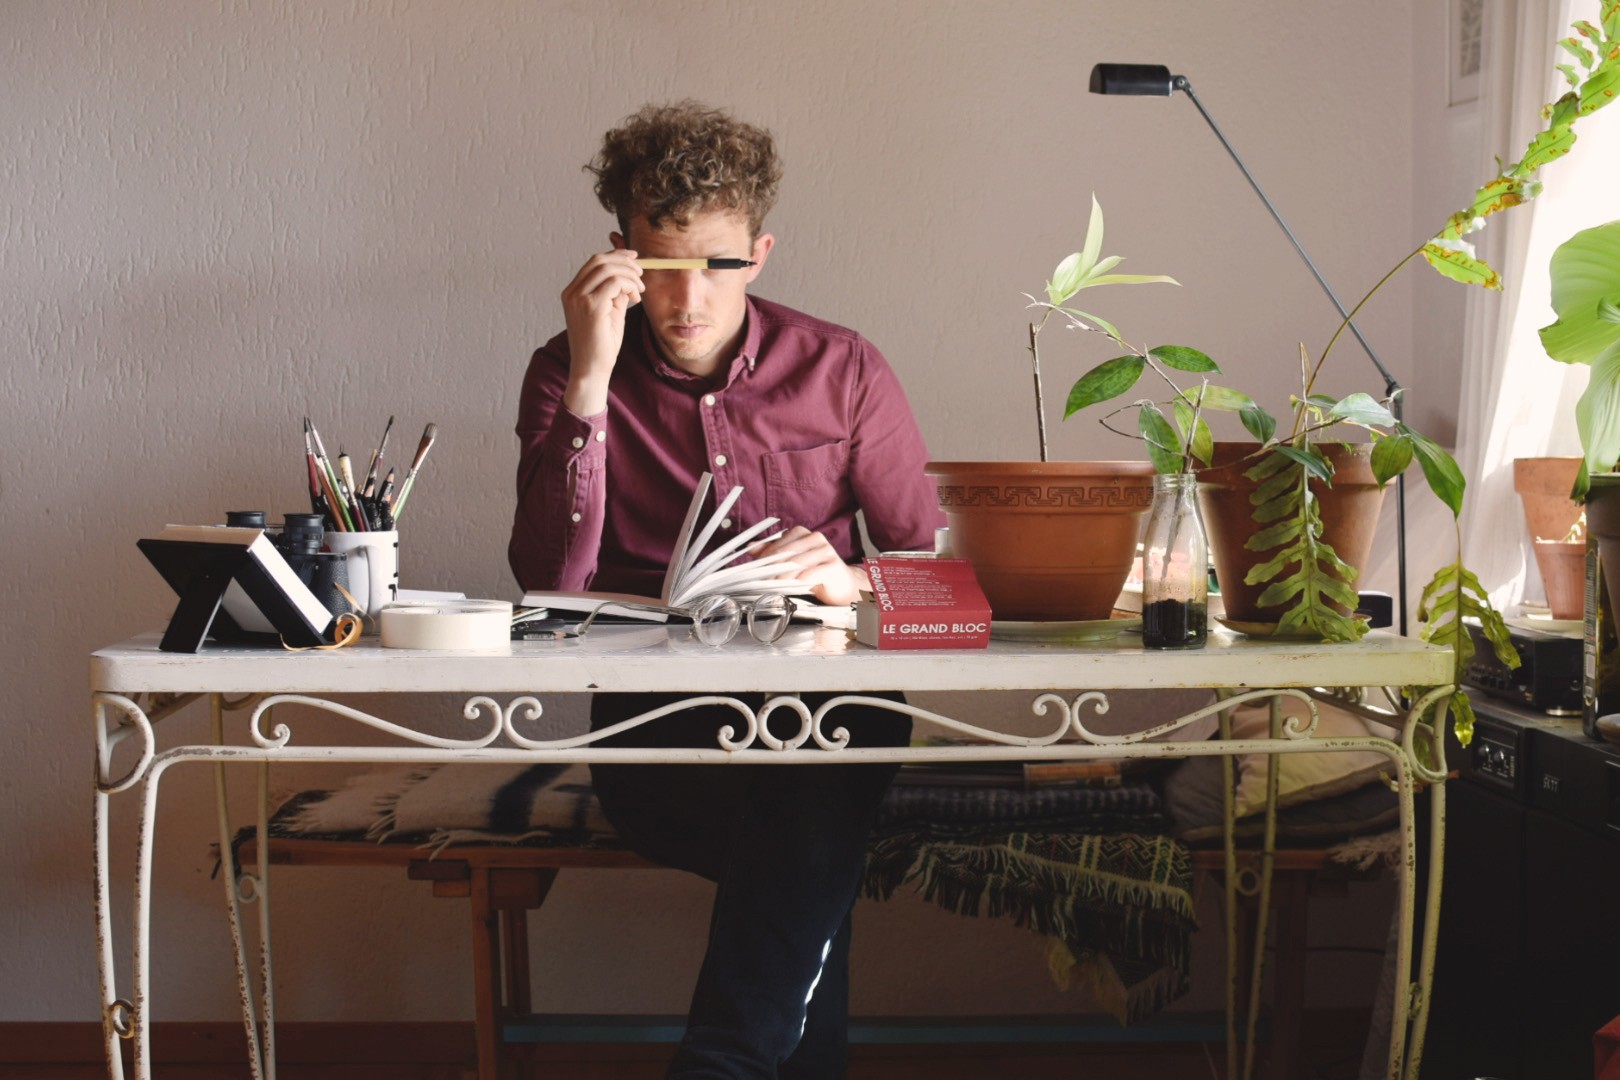 Ein Mann mit Hemd und krausem Haar sitzt an einem Arbeitstisch und hält sich einen Stift vor das Gesicht. Auf dem Tisch liegen Stifte und ein aufgeschlagenes Buch. Daneben stehen Pflanzen.